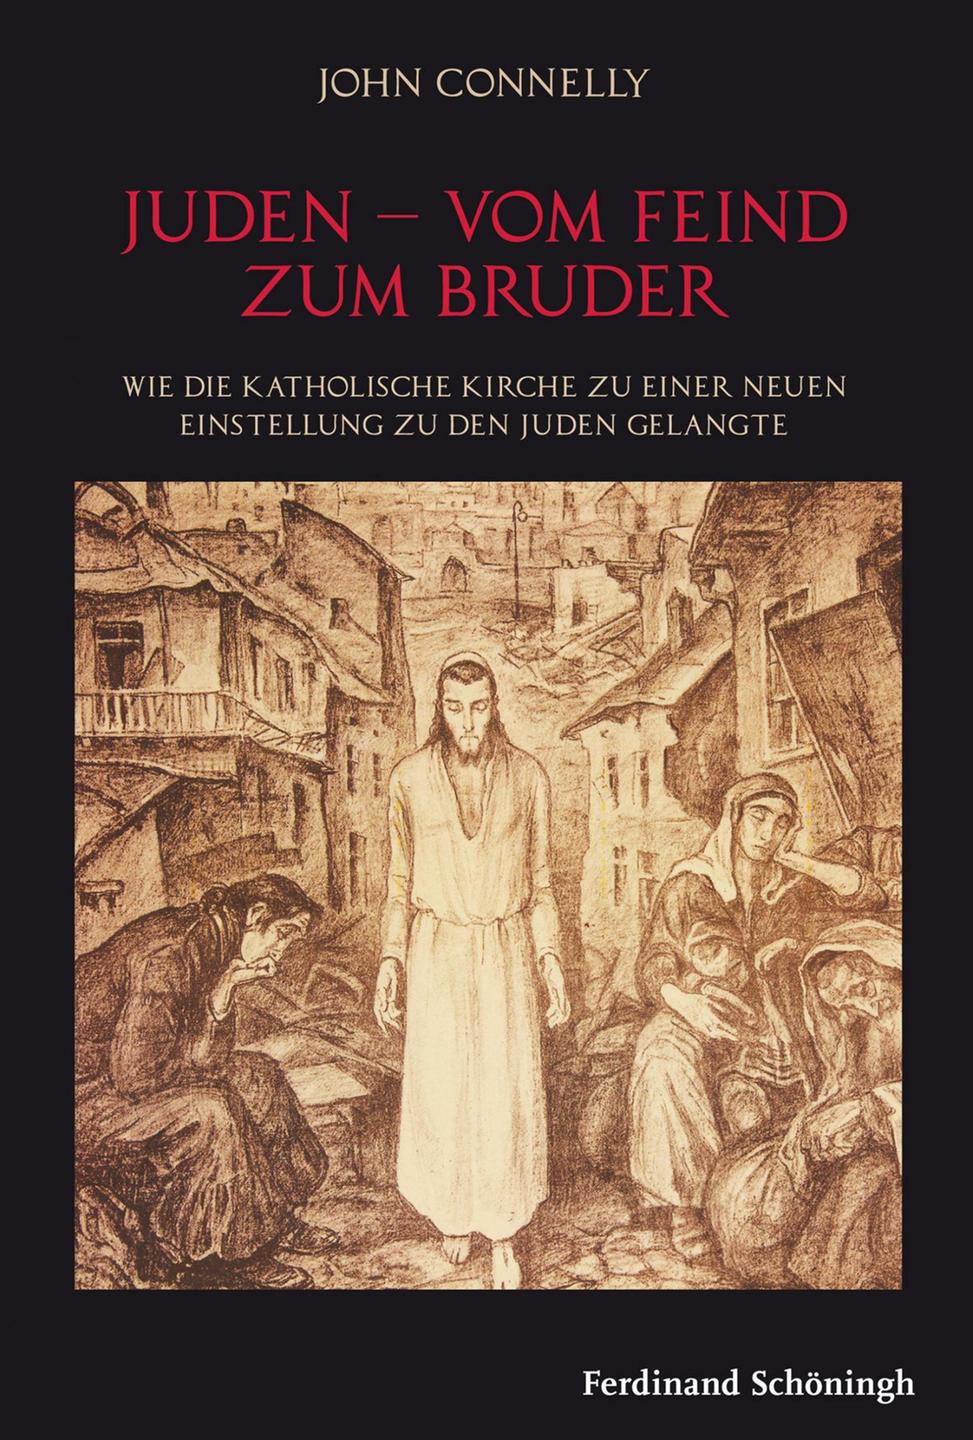 Cover - John Connelly: "Juden – Vom Feind zum Bruder"